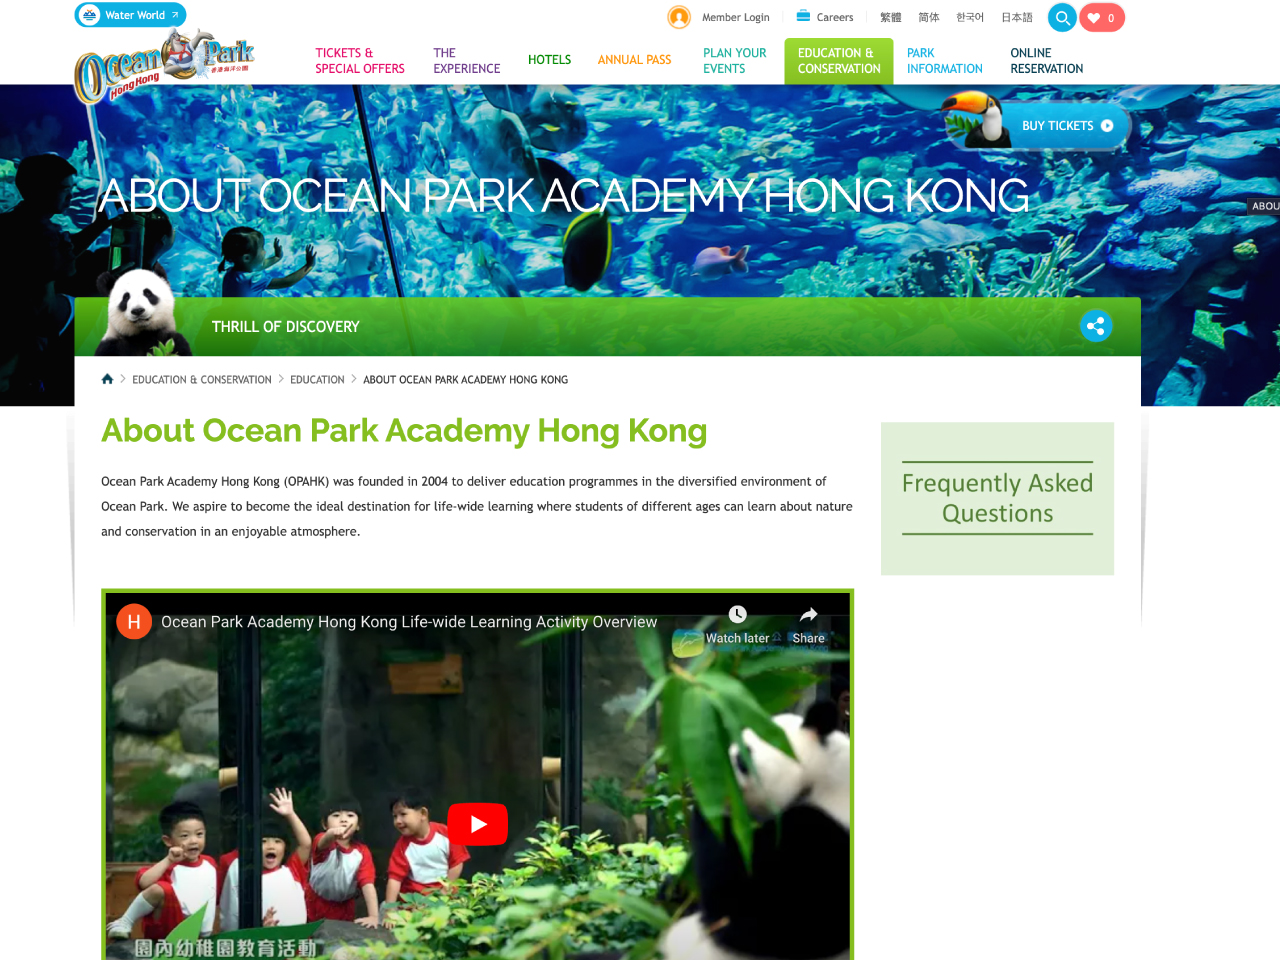 Ocean Park Academy Hong Kong